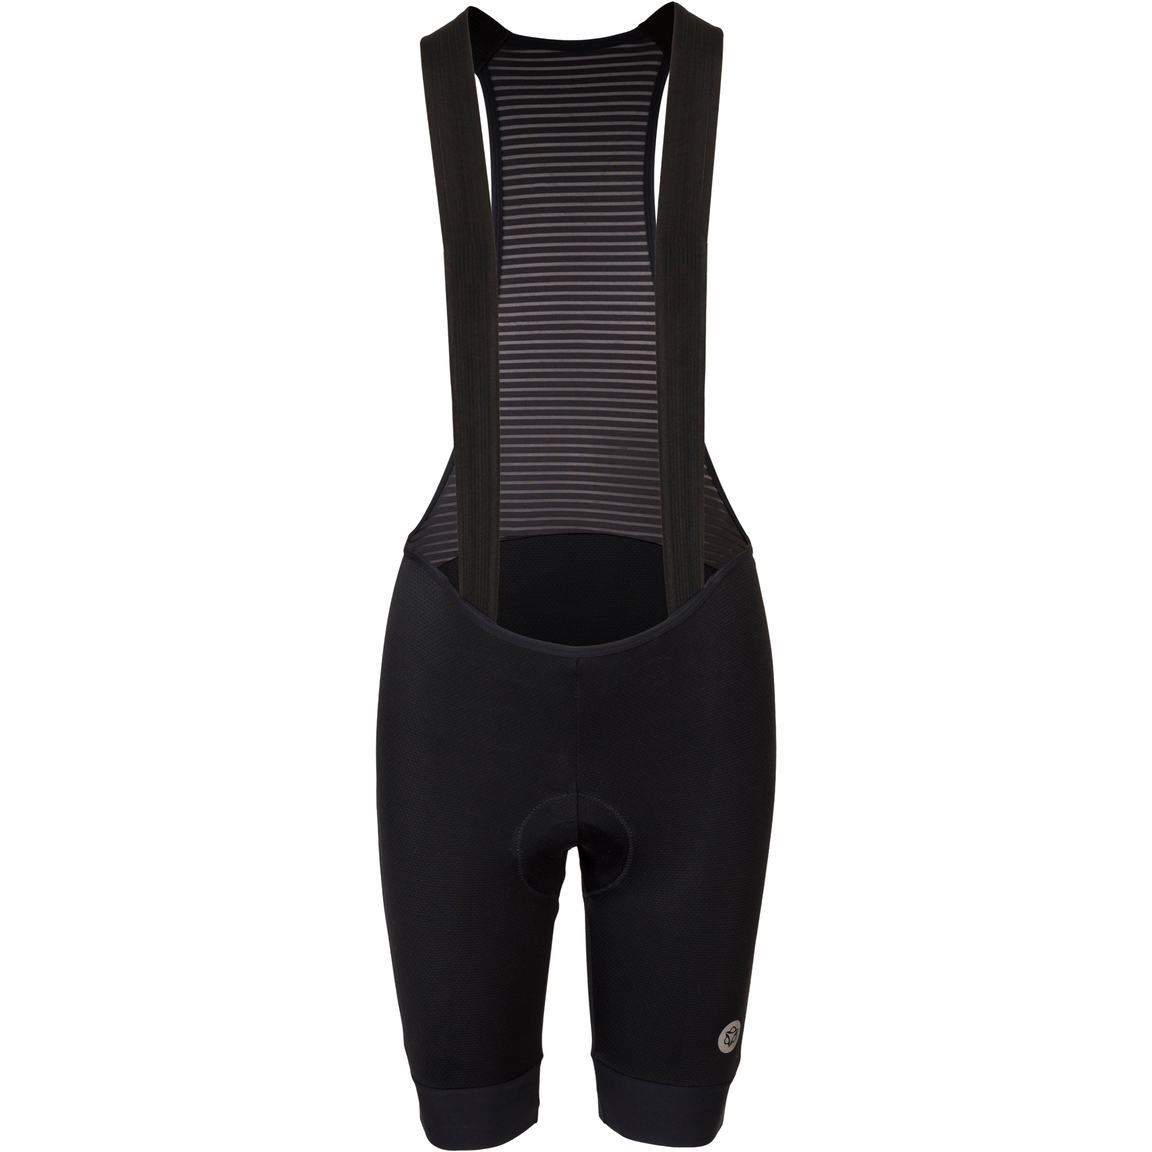 Produktbild von AGU Trend High Summer Damen Trägershorts - schwarz